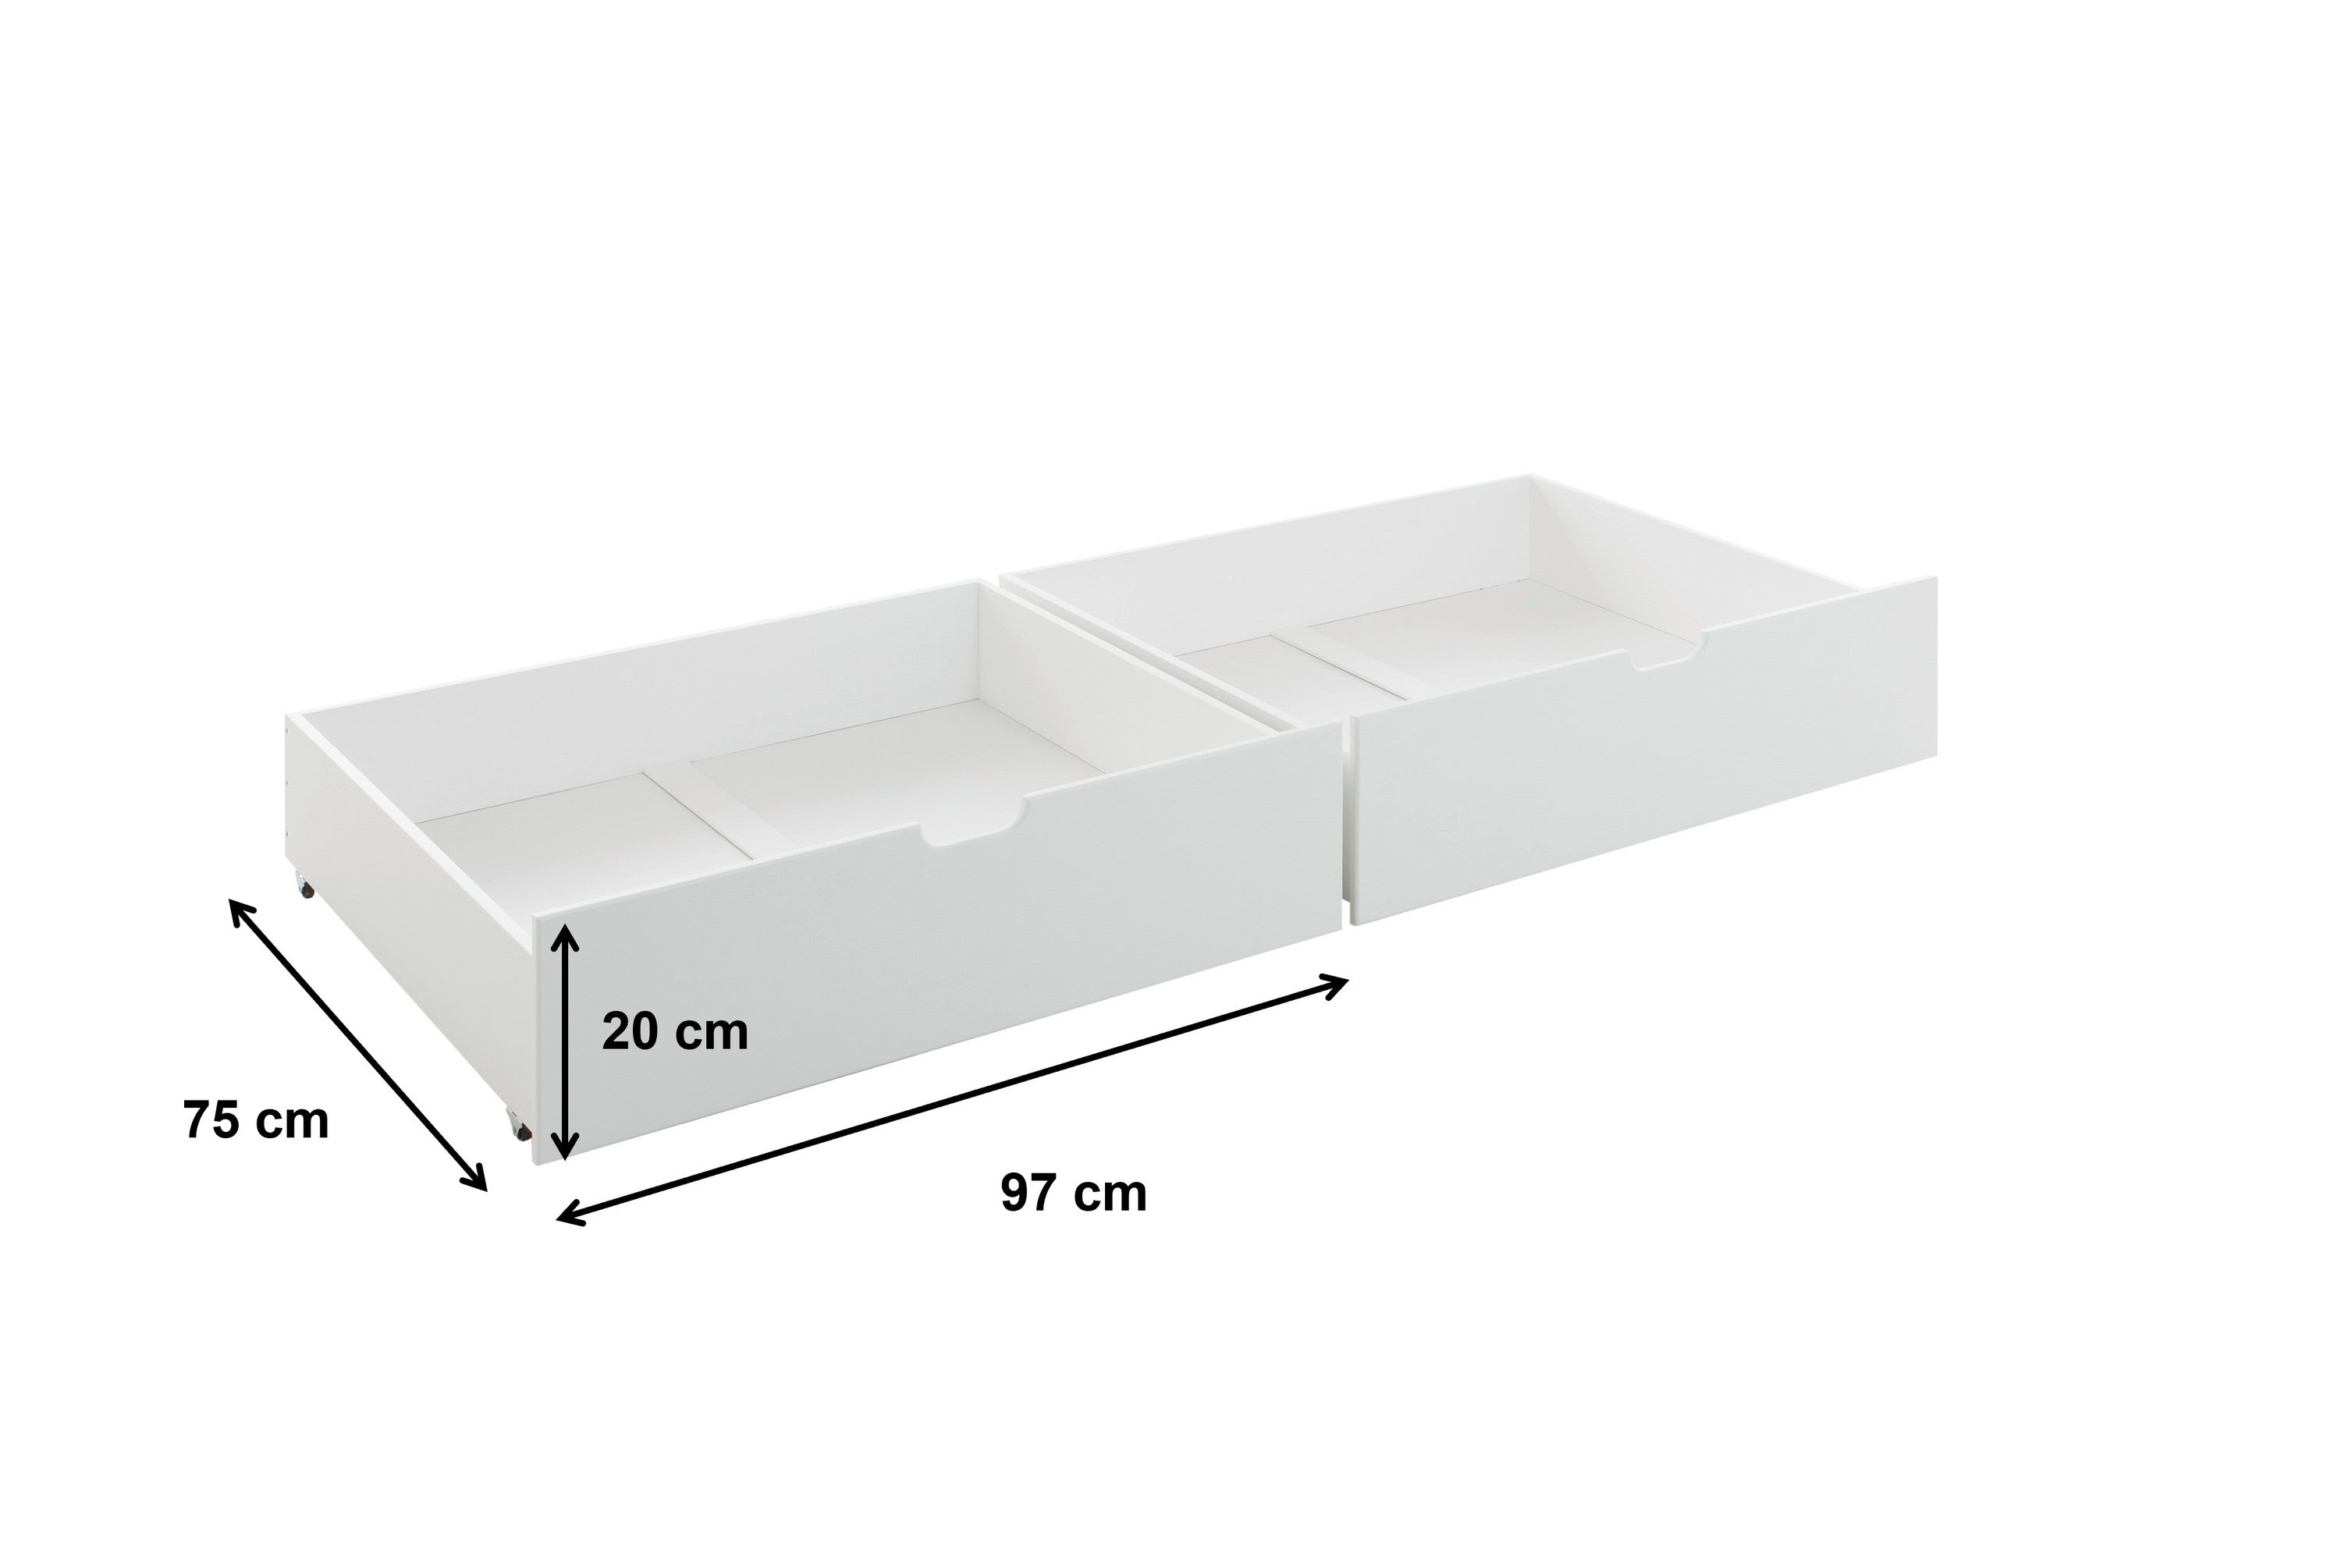 2x Bettkasten Alain mit Bodenplatten Kiefer massiv weiß auf 4 Rollen B 97 - T 75 cm - H 20 cm